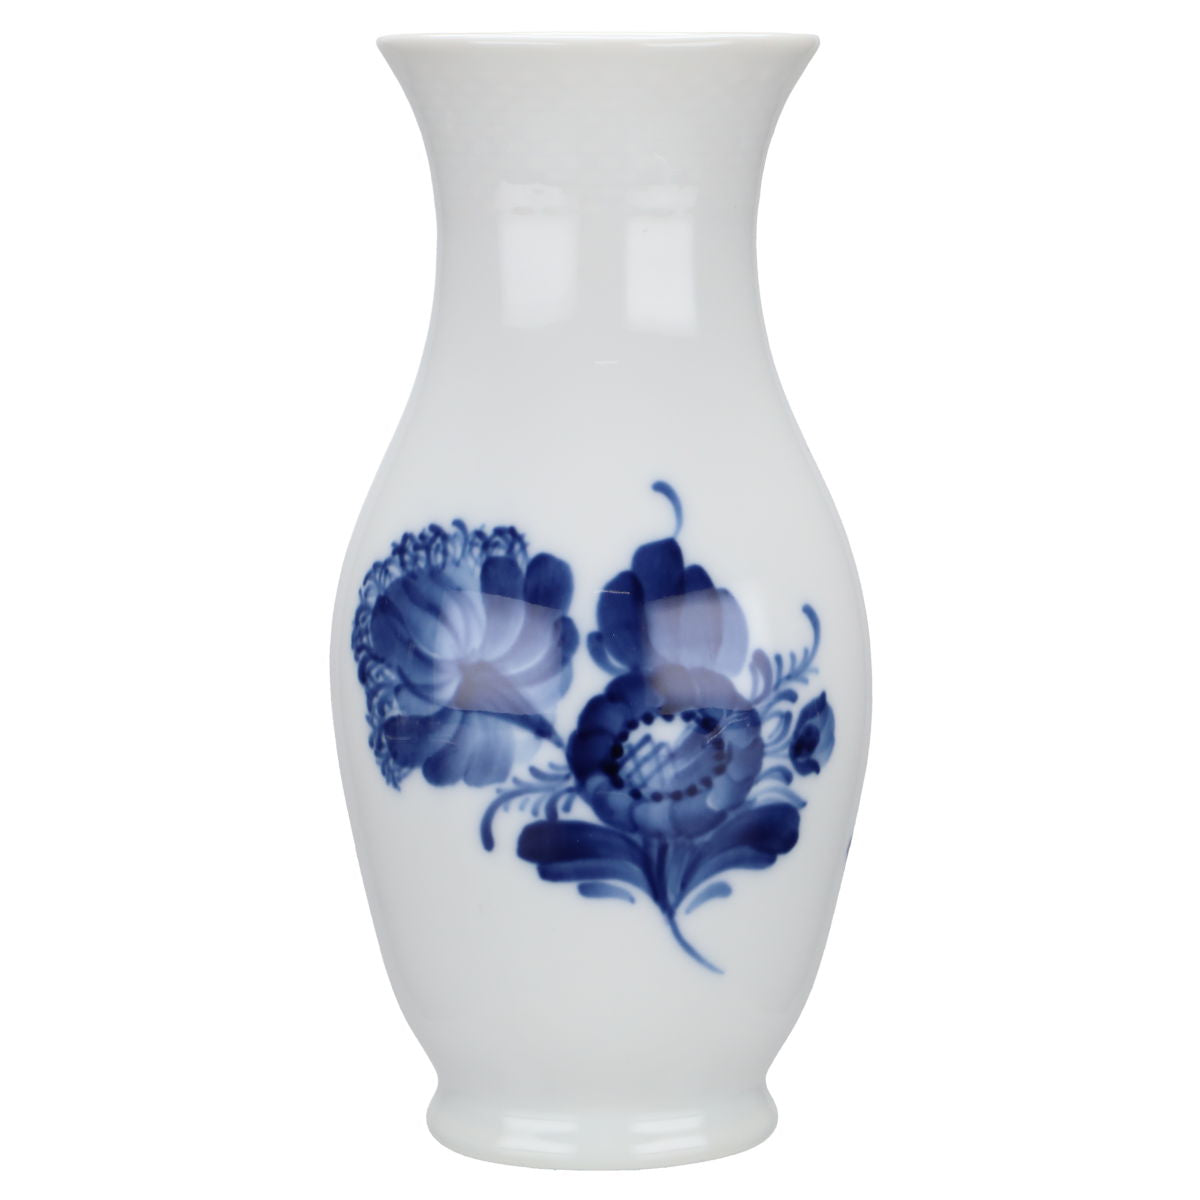 Vase Modell 8263 - Royal Copenhagen Blaue Blume glatt I. Wahl